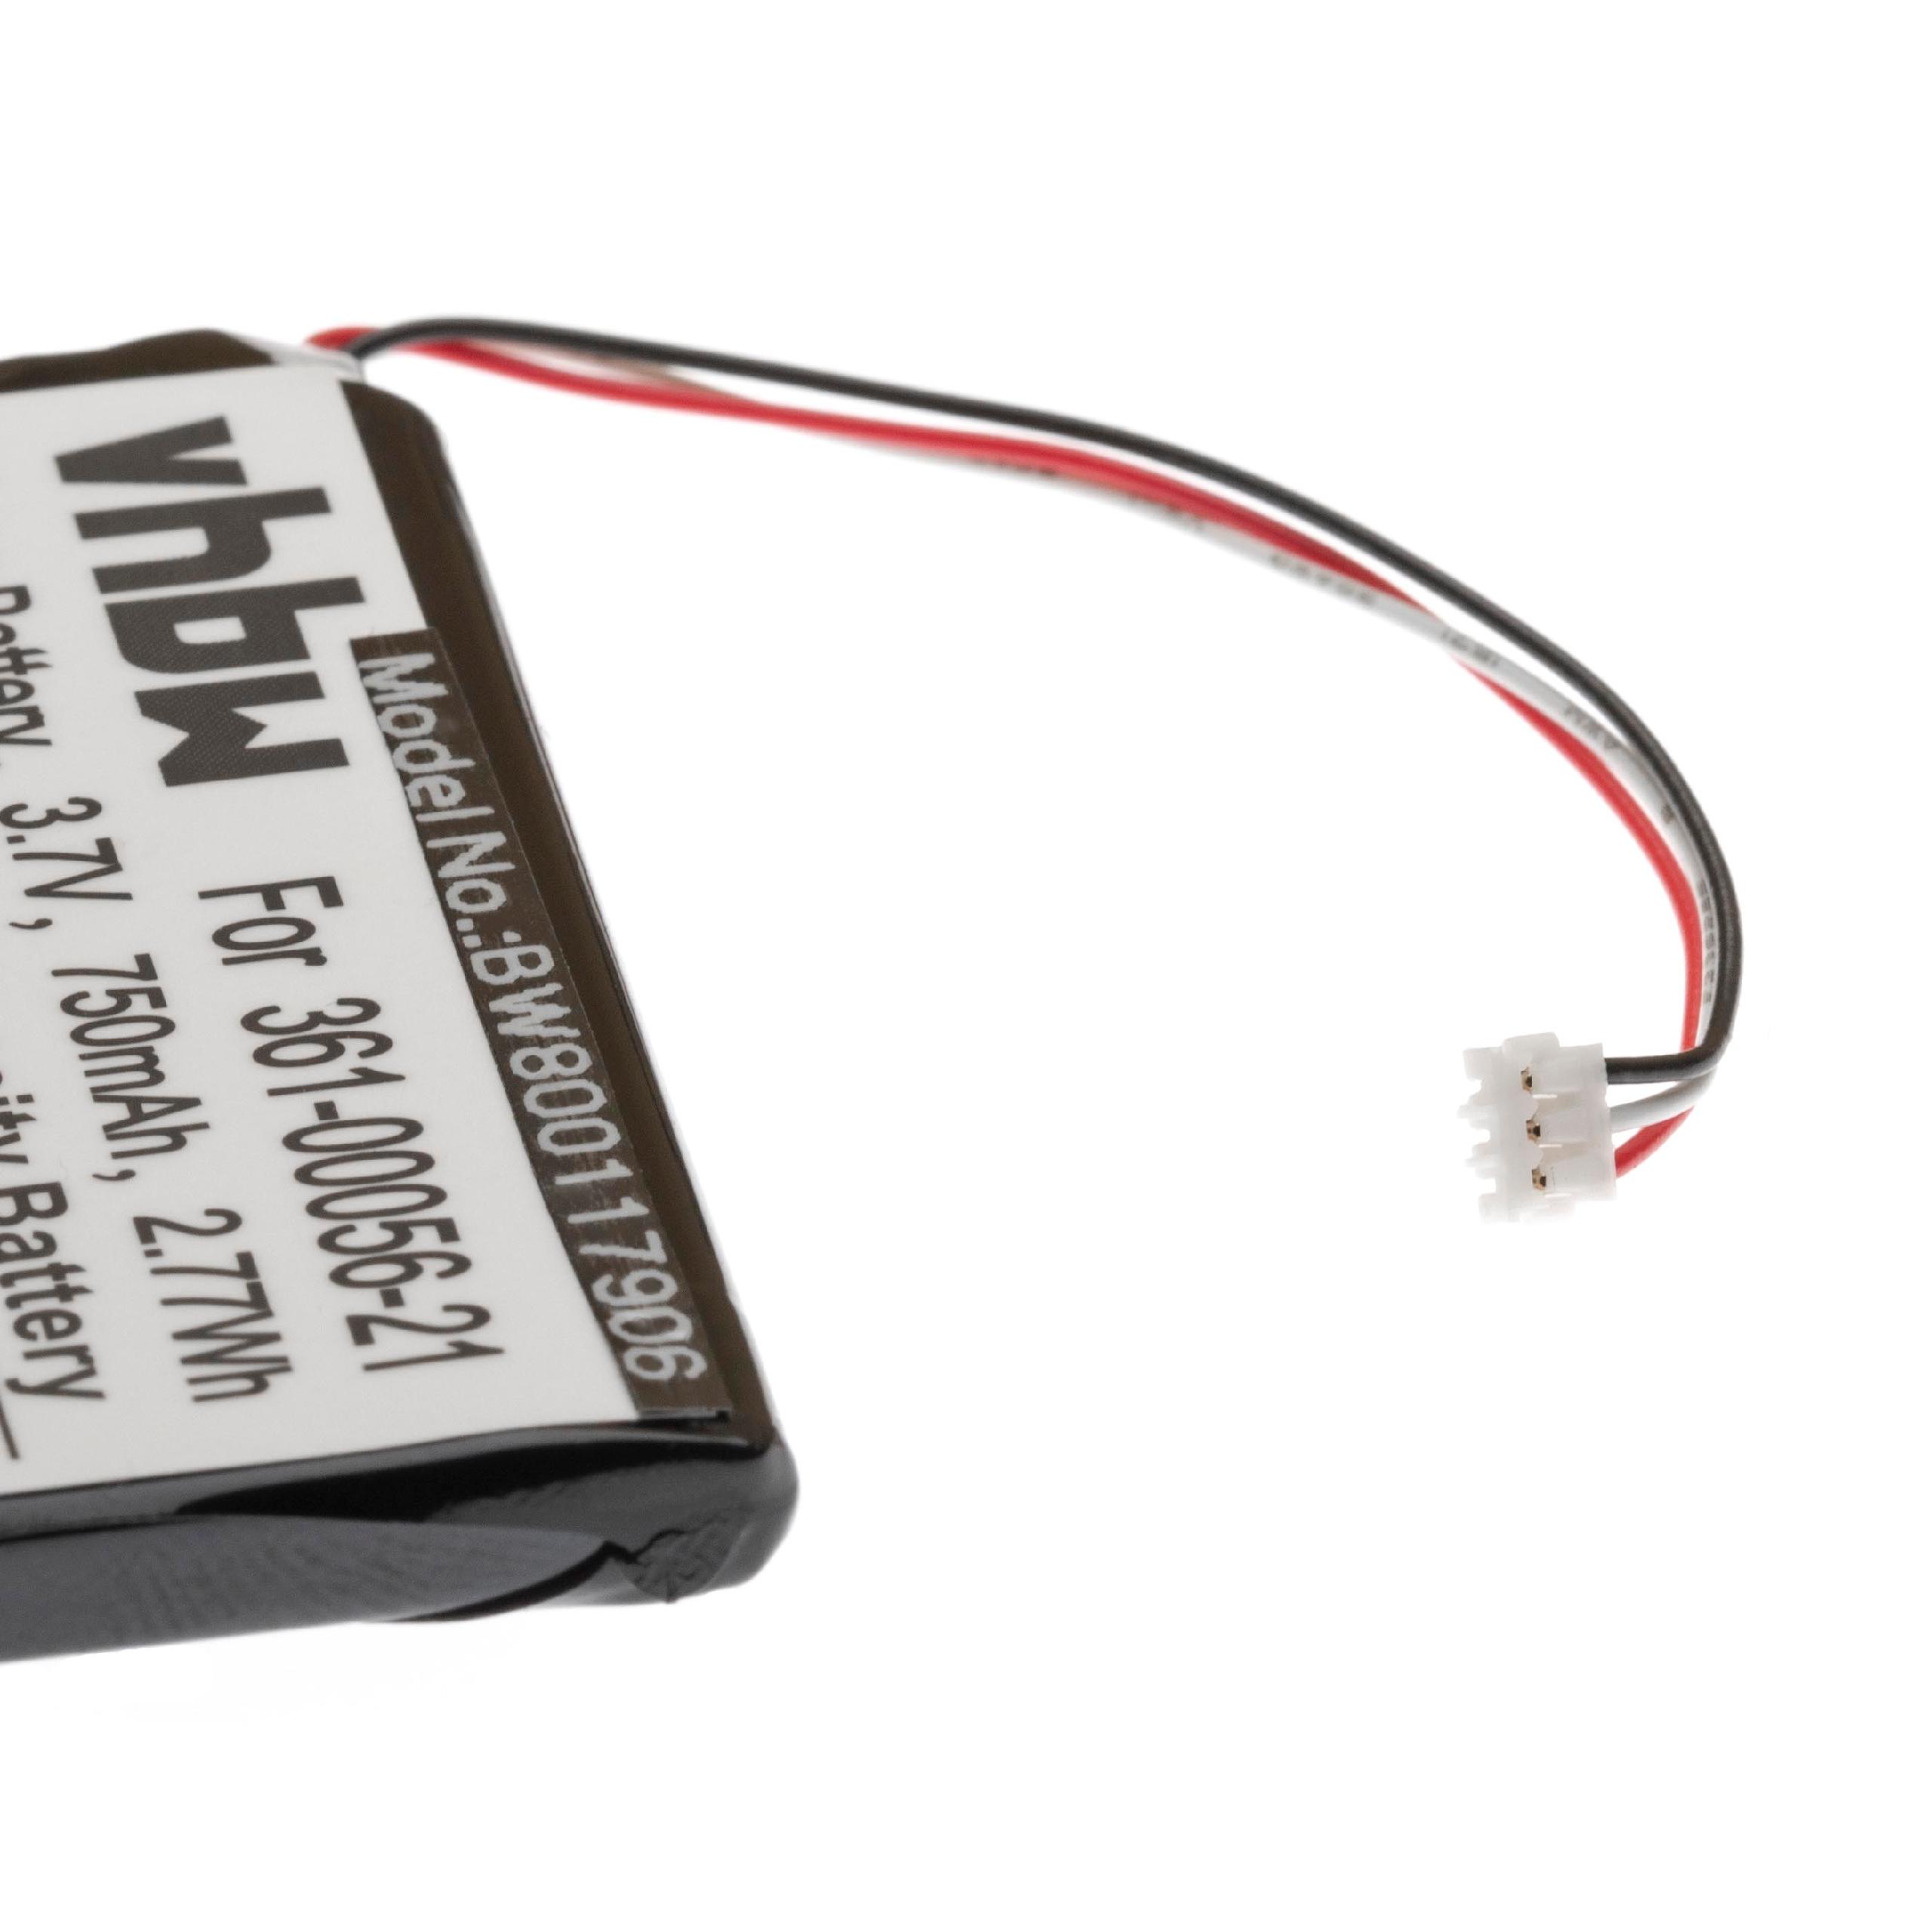 Batterie remplace Garmin 361-00056-21 pour navigation GPS - 750mAh 3,7V Li-ion